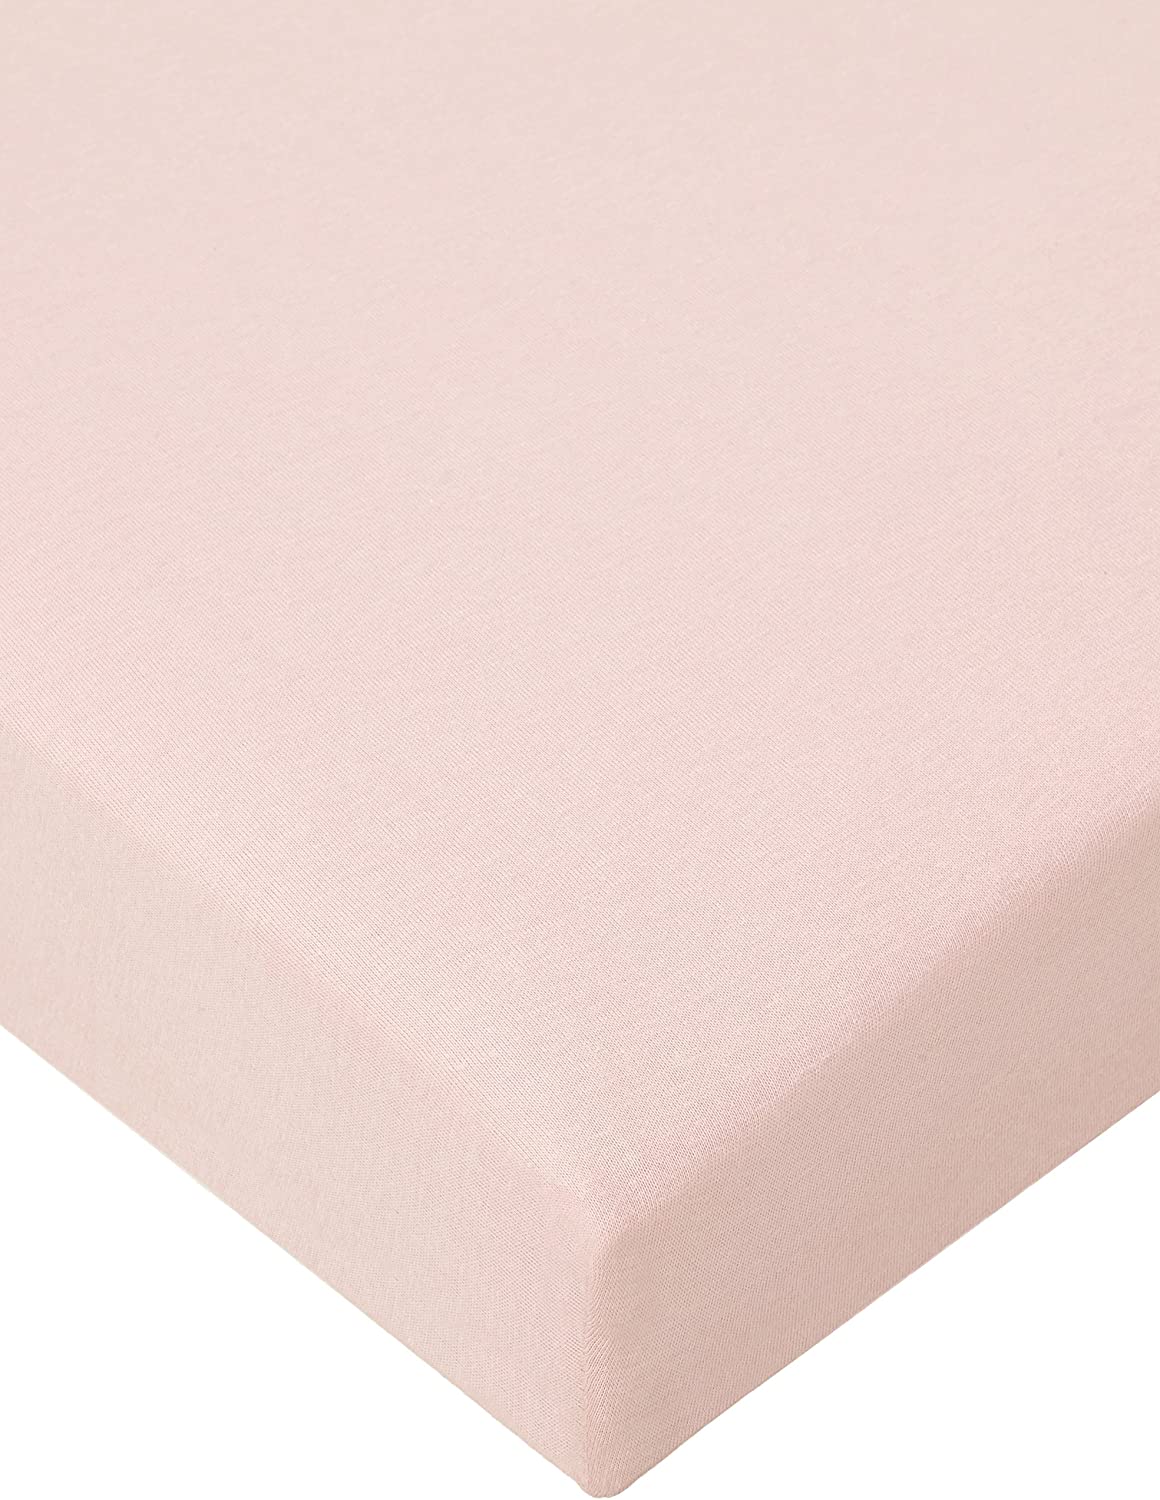 Pinolino 540004-7 Jersey Fitted Sheet Pink